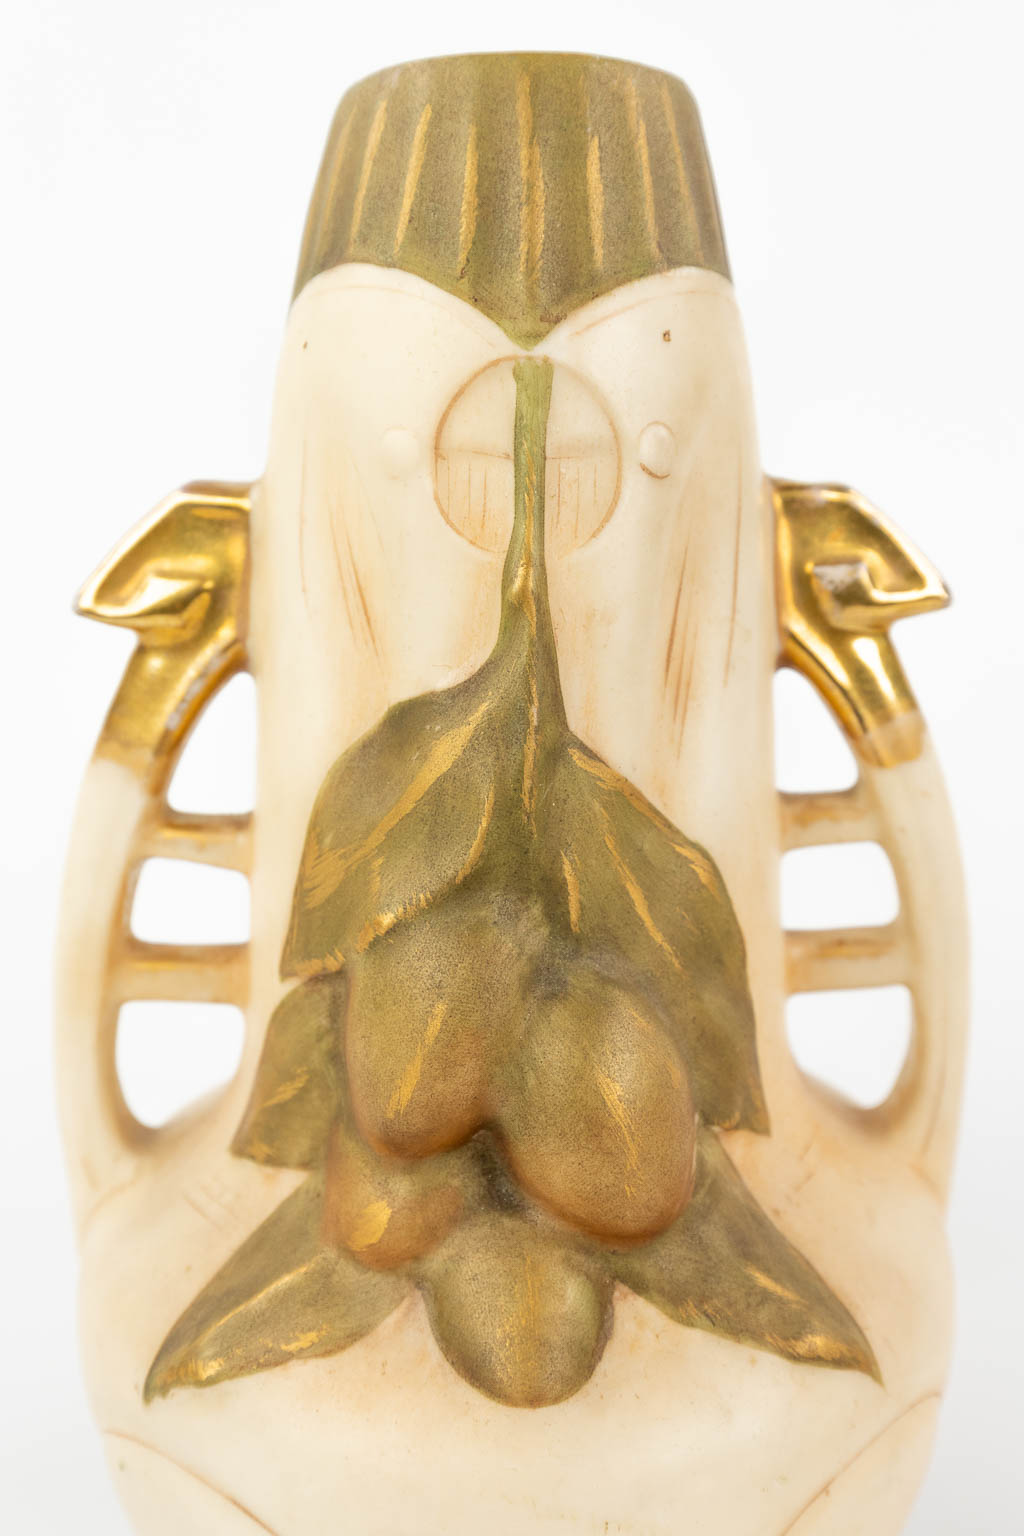 Royal Dux, een paar vazen gemaakt uit faience in art nouveau stijl. (H:21,5 x D:12 cm)